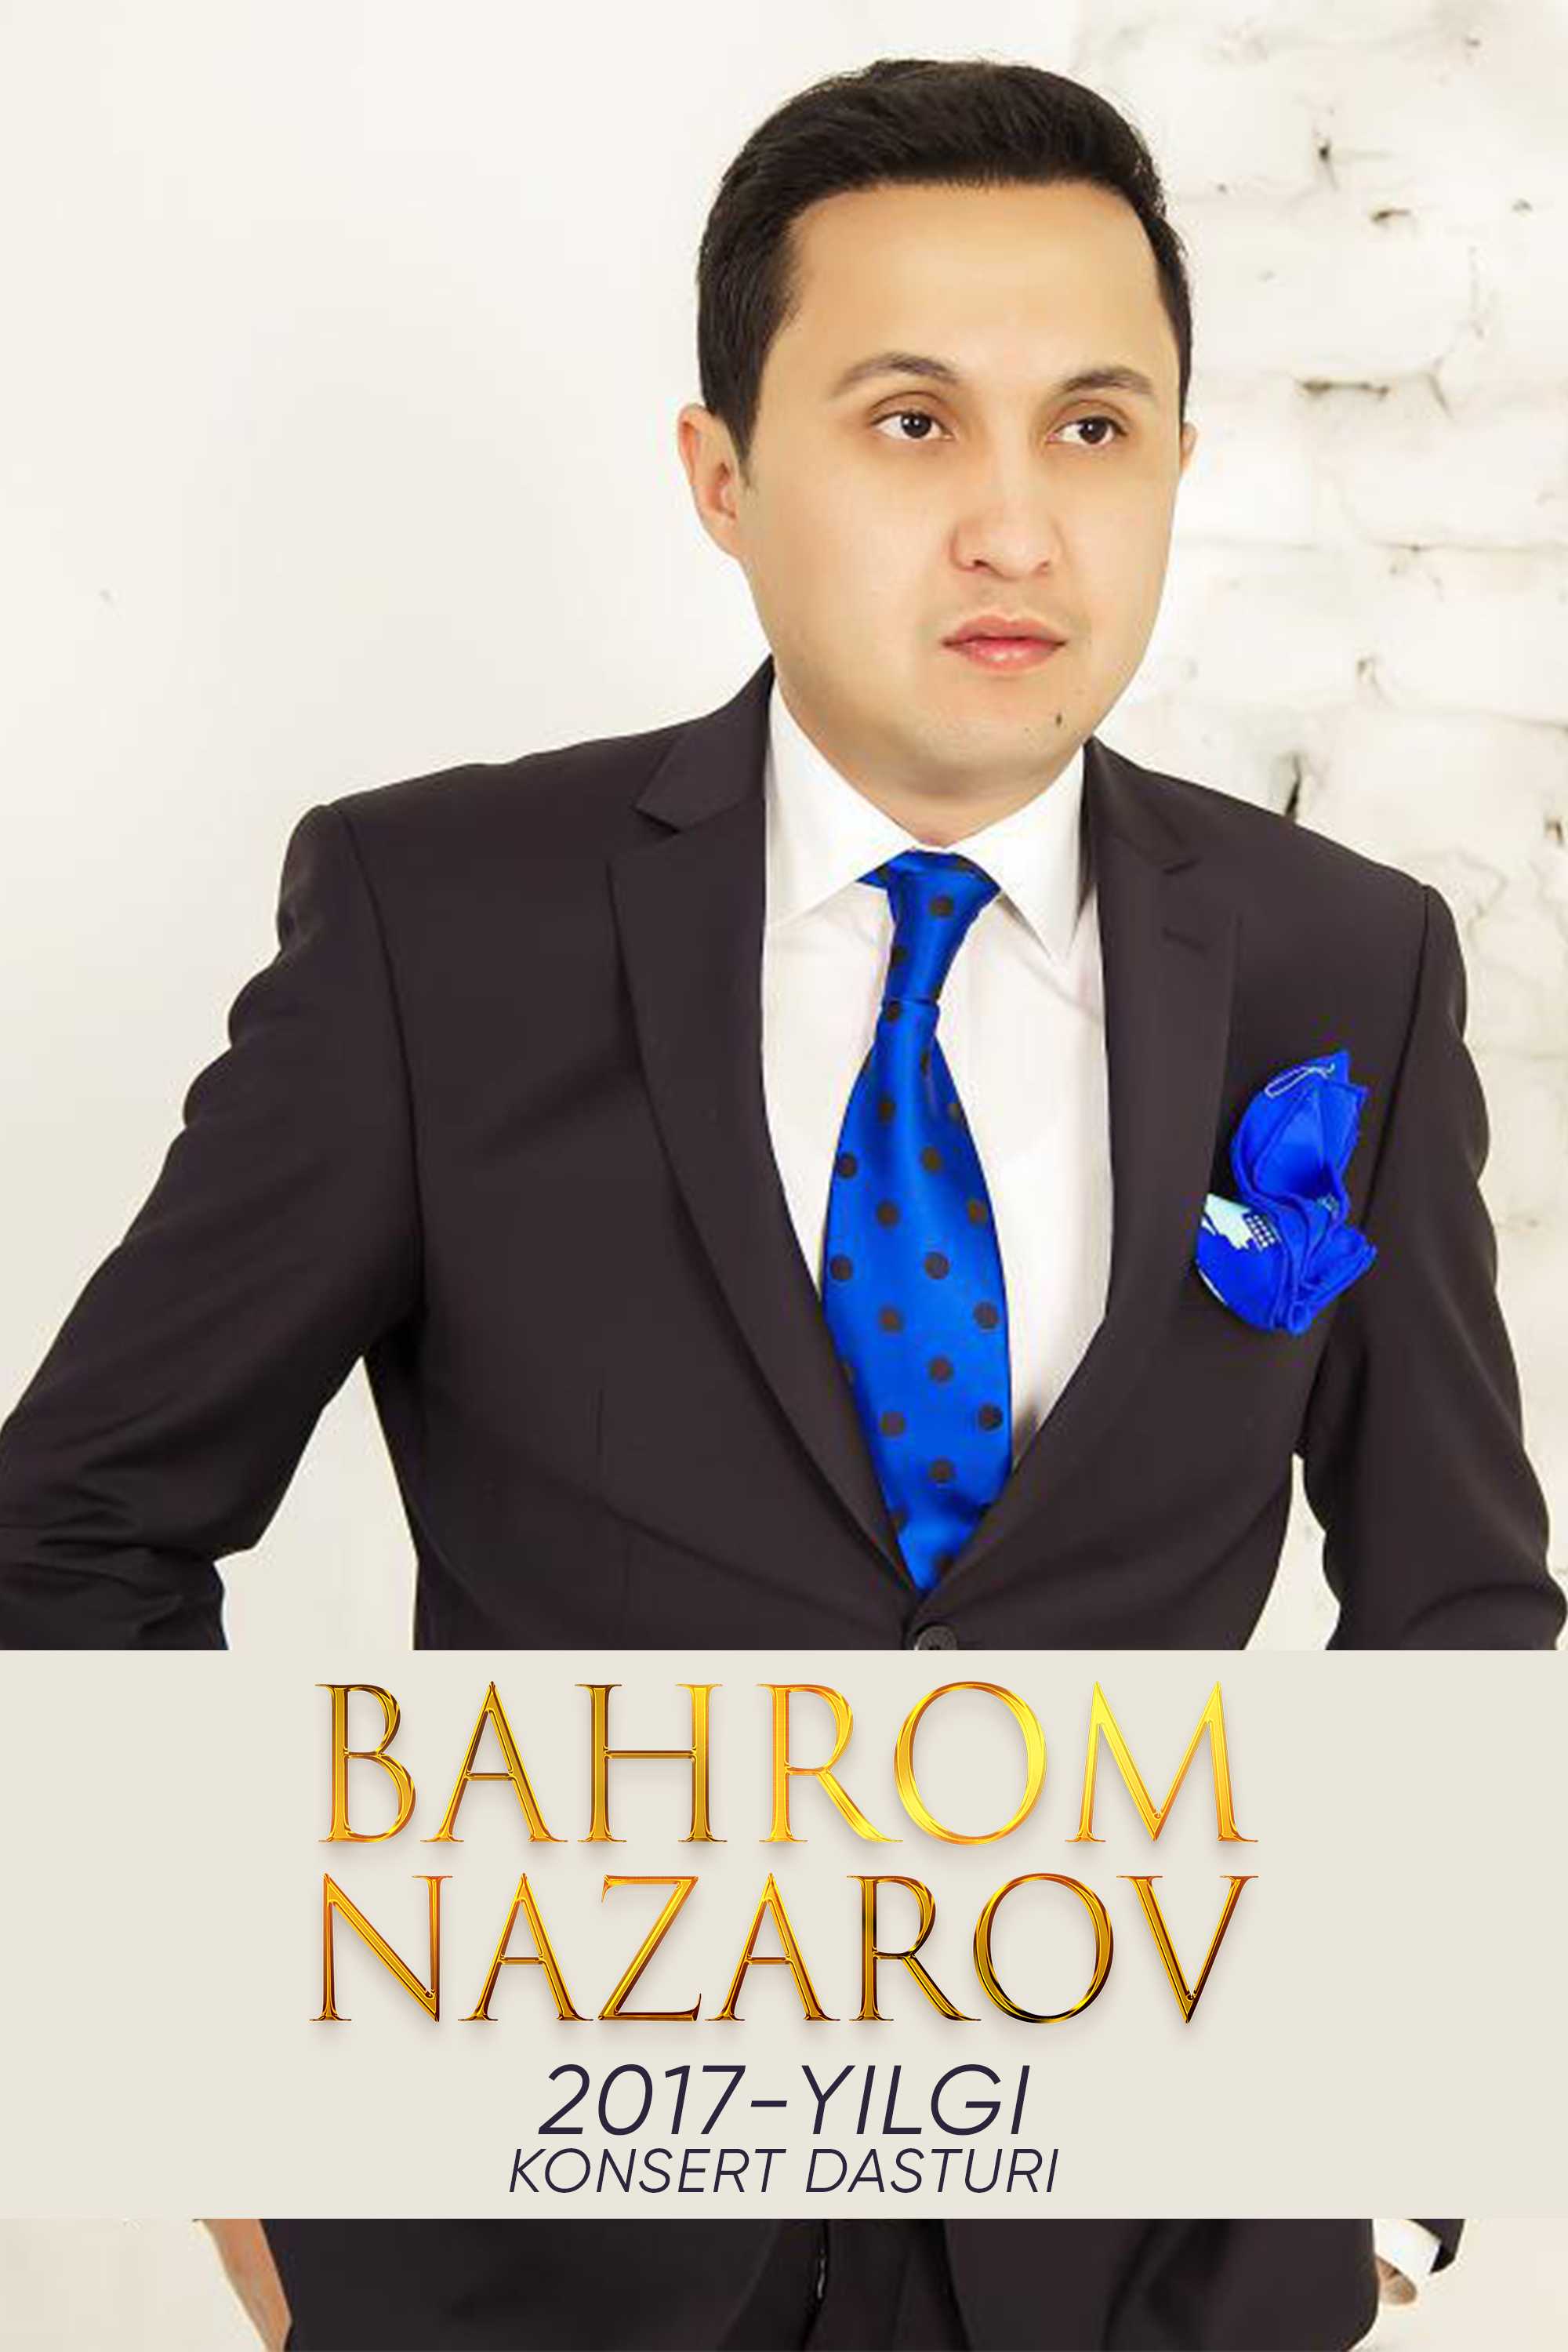 Бахром Назаров 2017-йилги концерт дастури